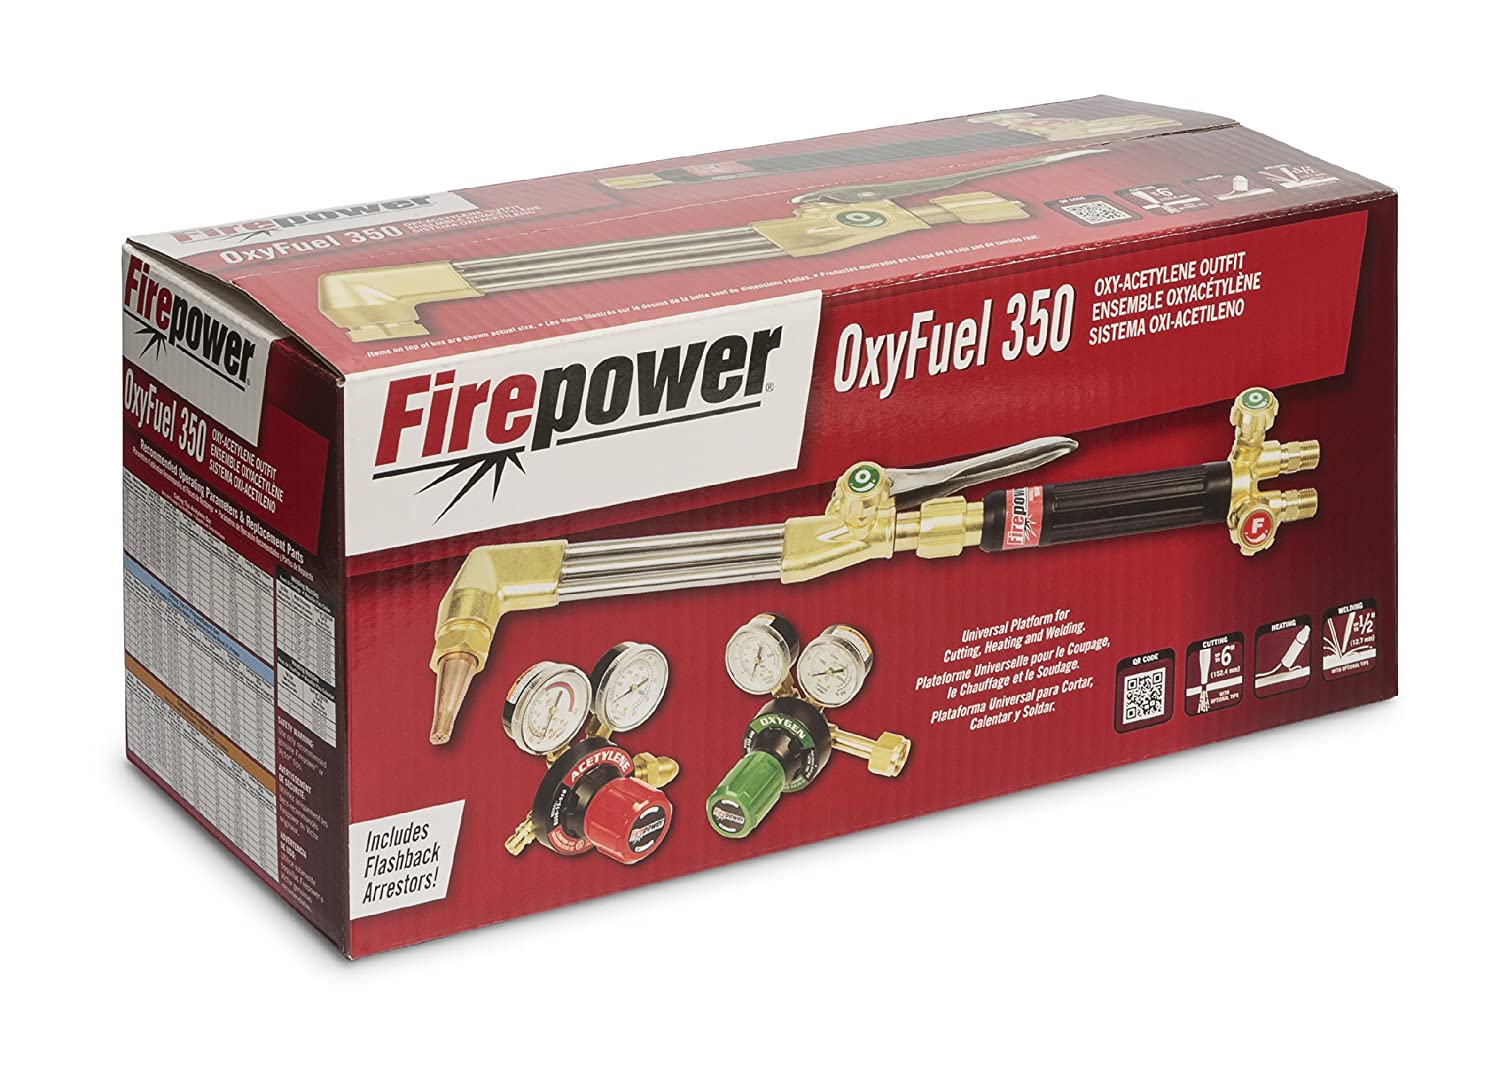 Firepower - FIR-0384-2682 - OxyFuel 350 Heavy Duty Cutting & Welding Outfit - MPR Tools & Equipment